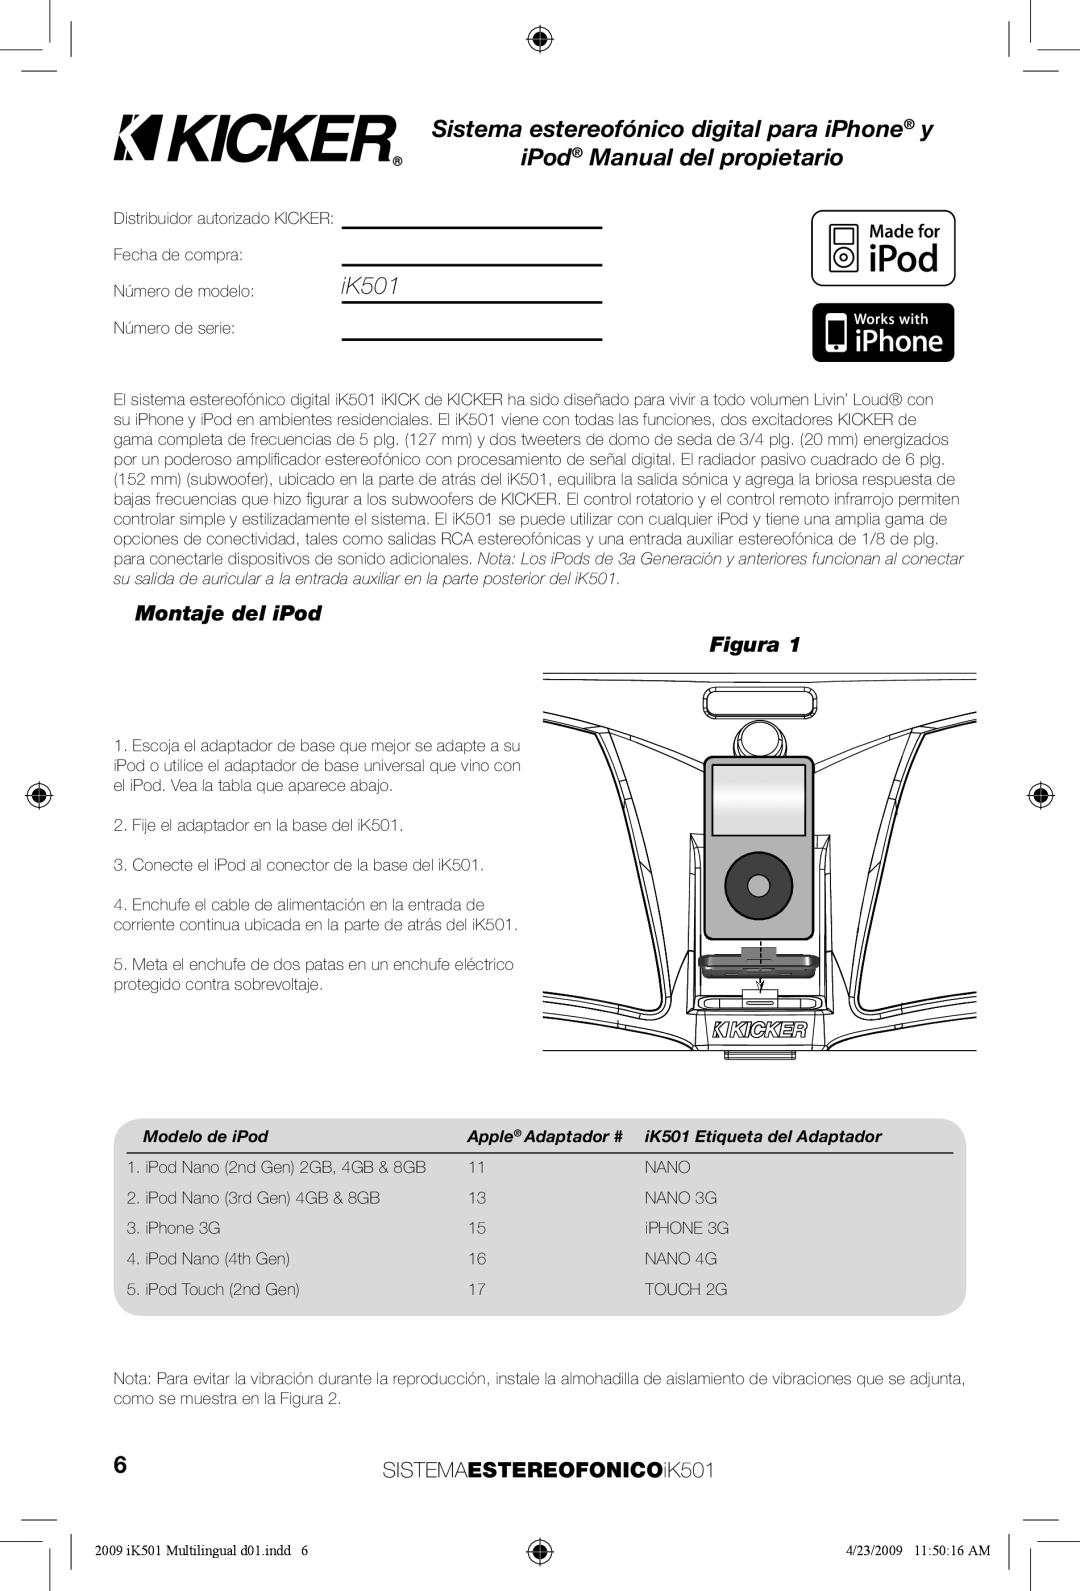 Kicker iK501 manual Sistema estereofónico digital para iPhone y, iPod Manual del propietario, Montaje del iPod, Figura 